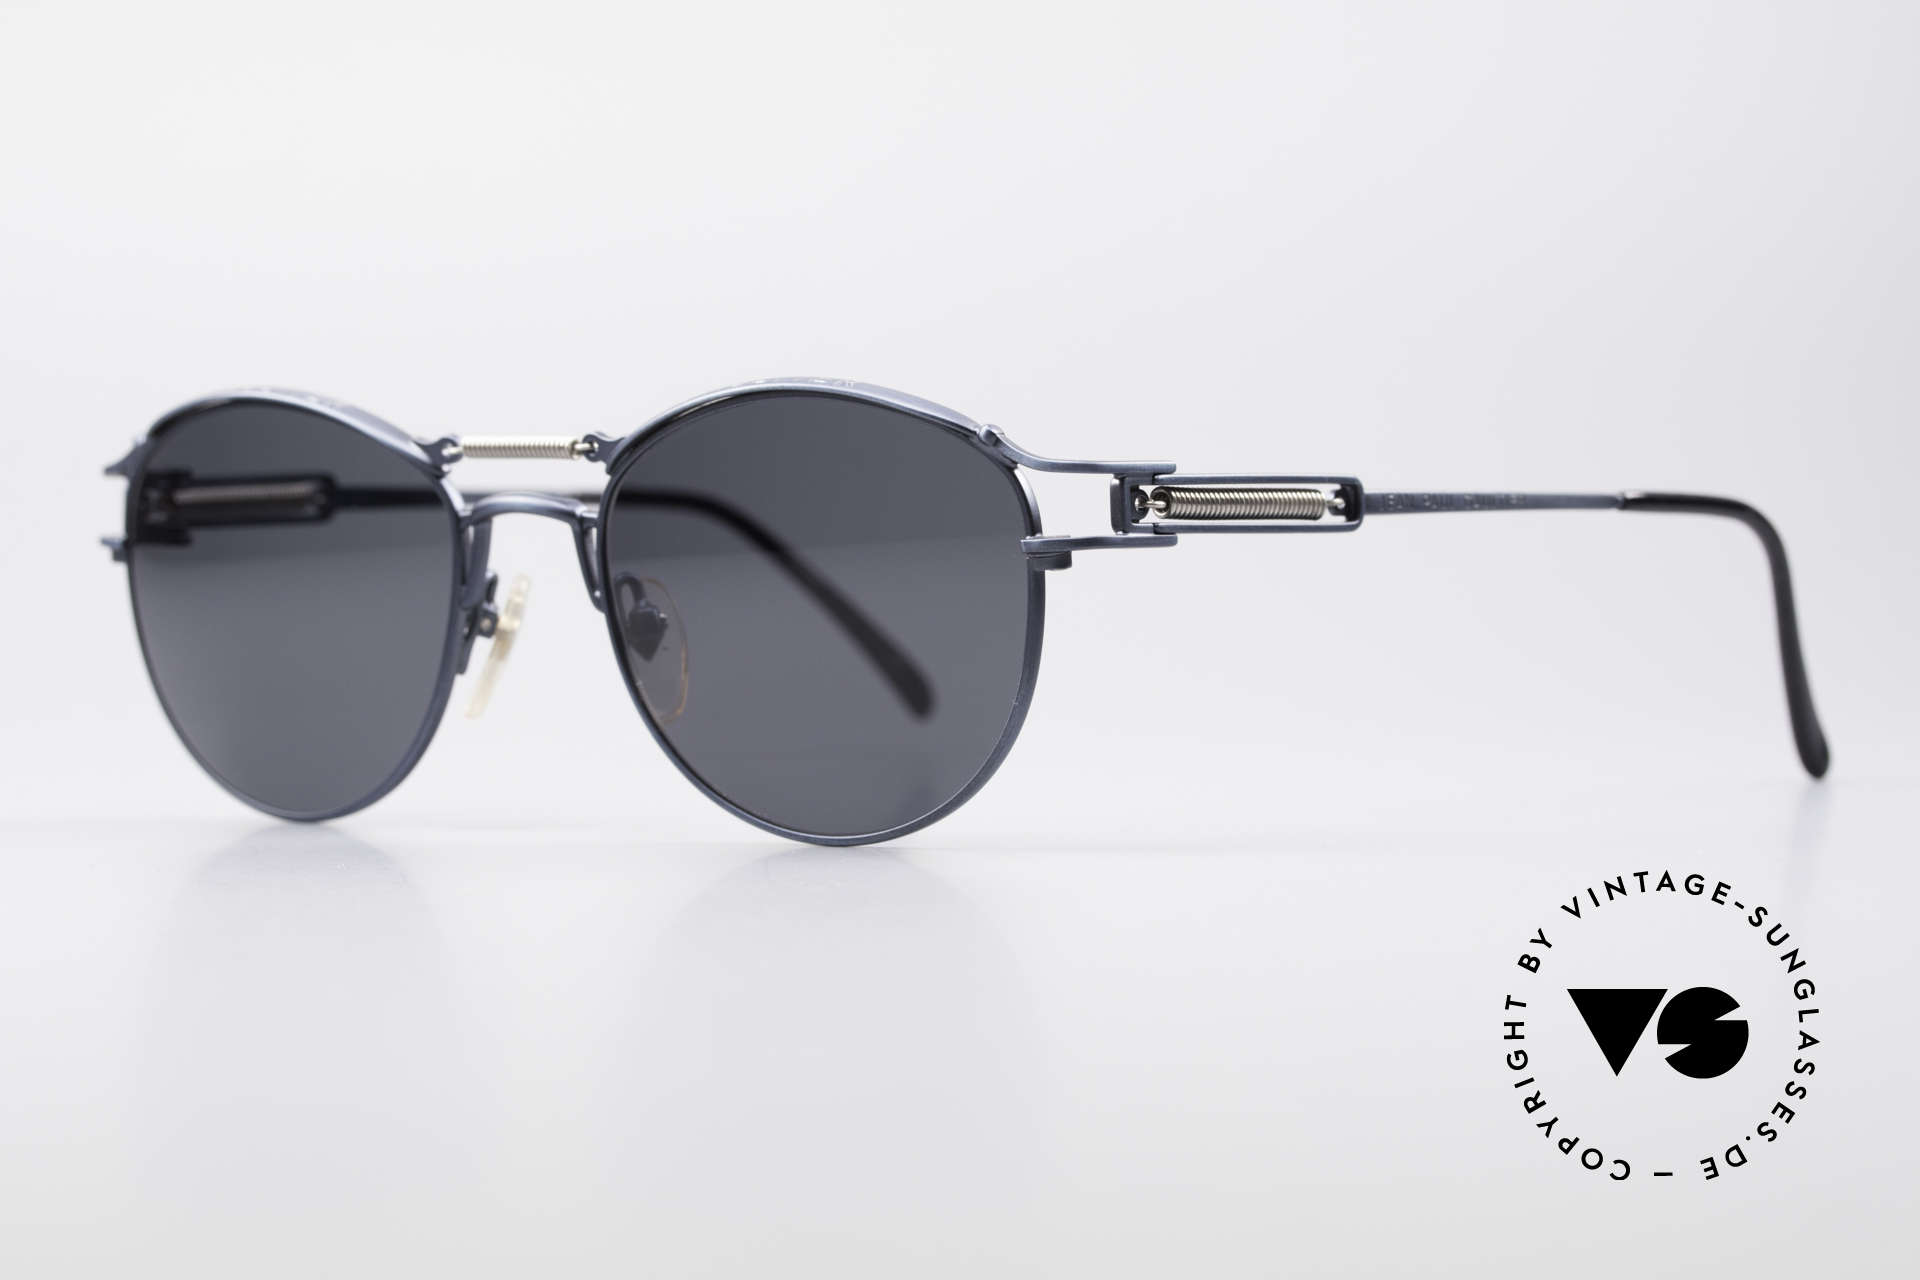 Jean Paul Gaultier 56-5107 Panto Designer Sunglasses